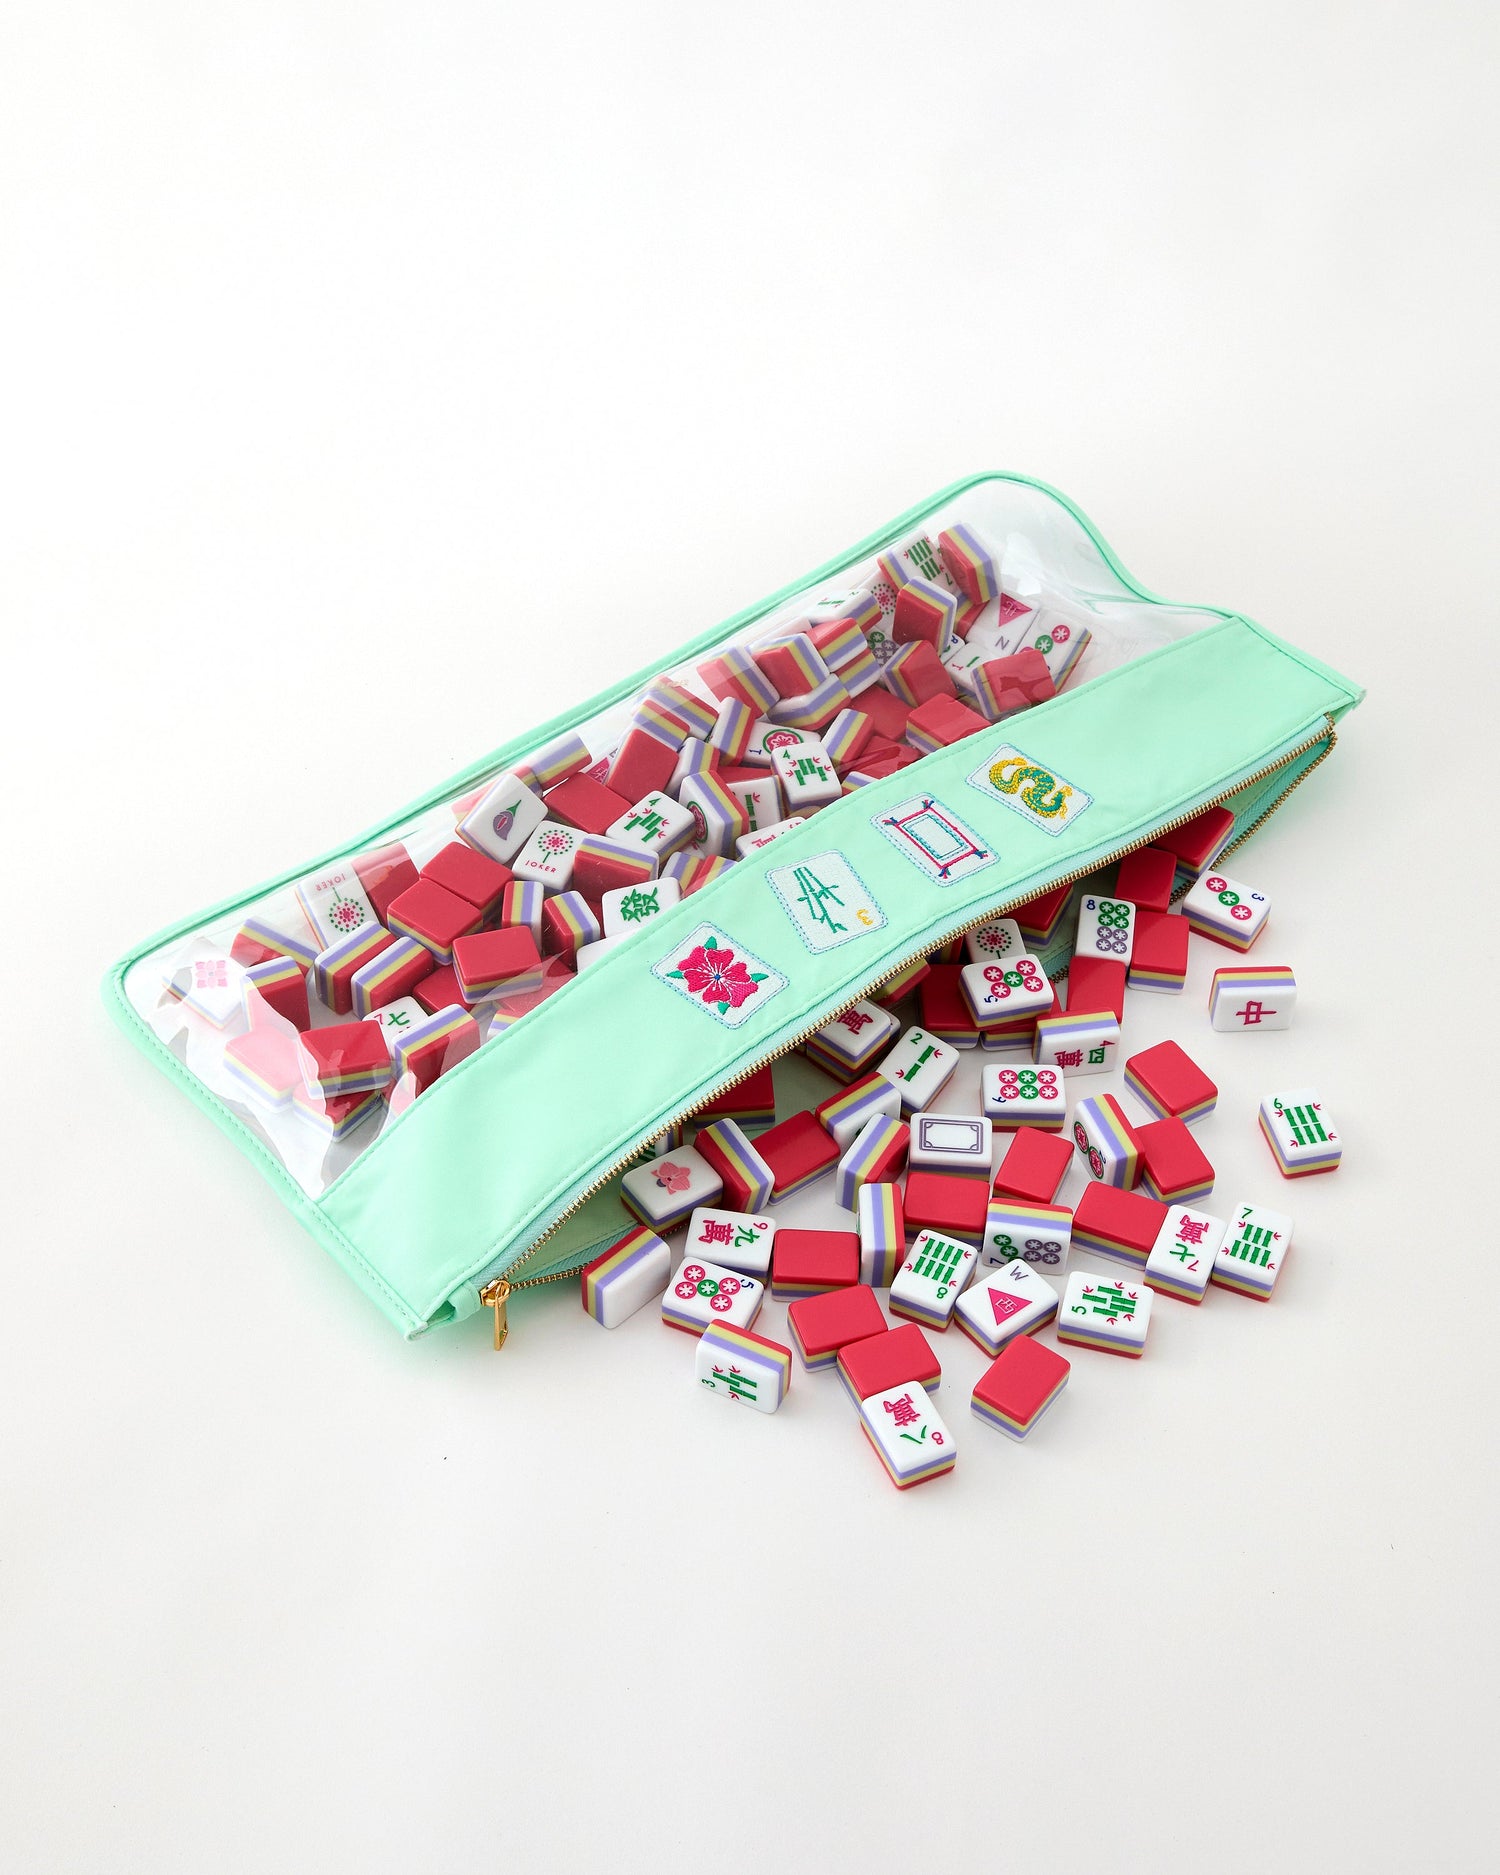 Spring Mahjong Tiles - Oh My Mahjong